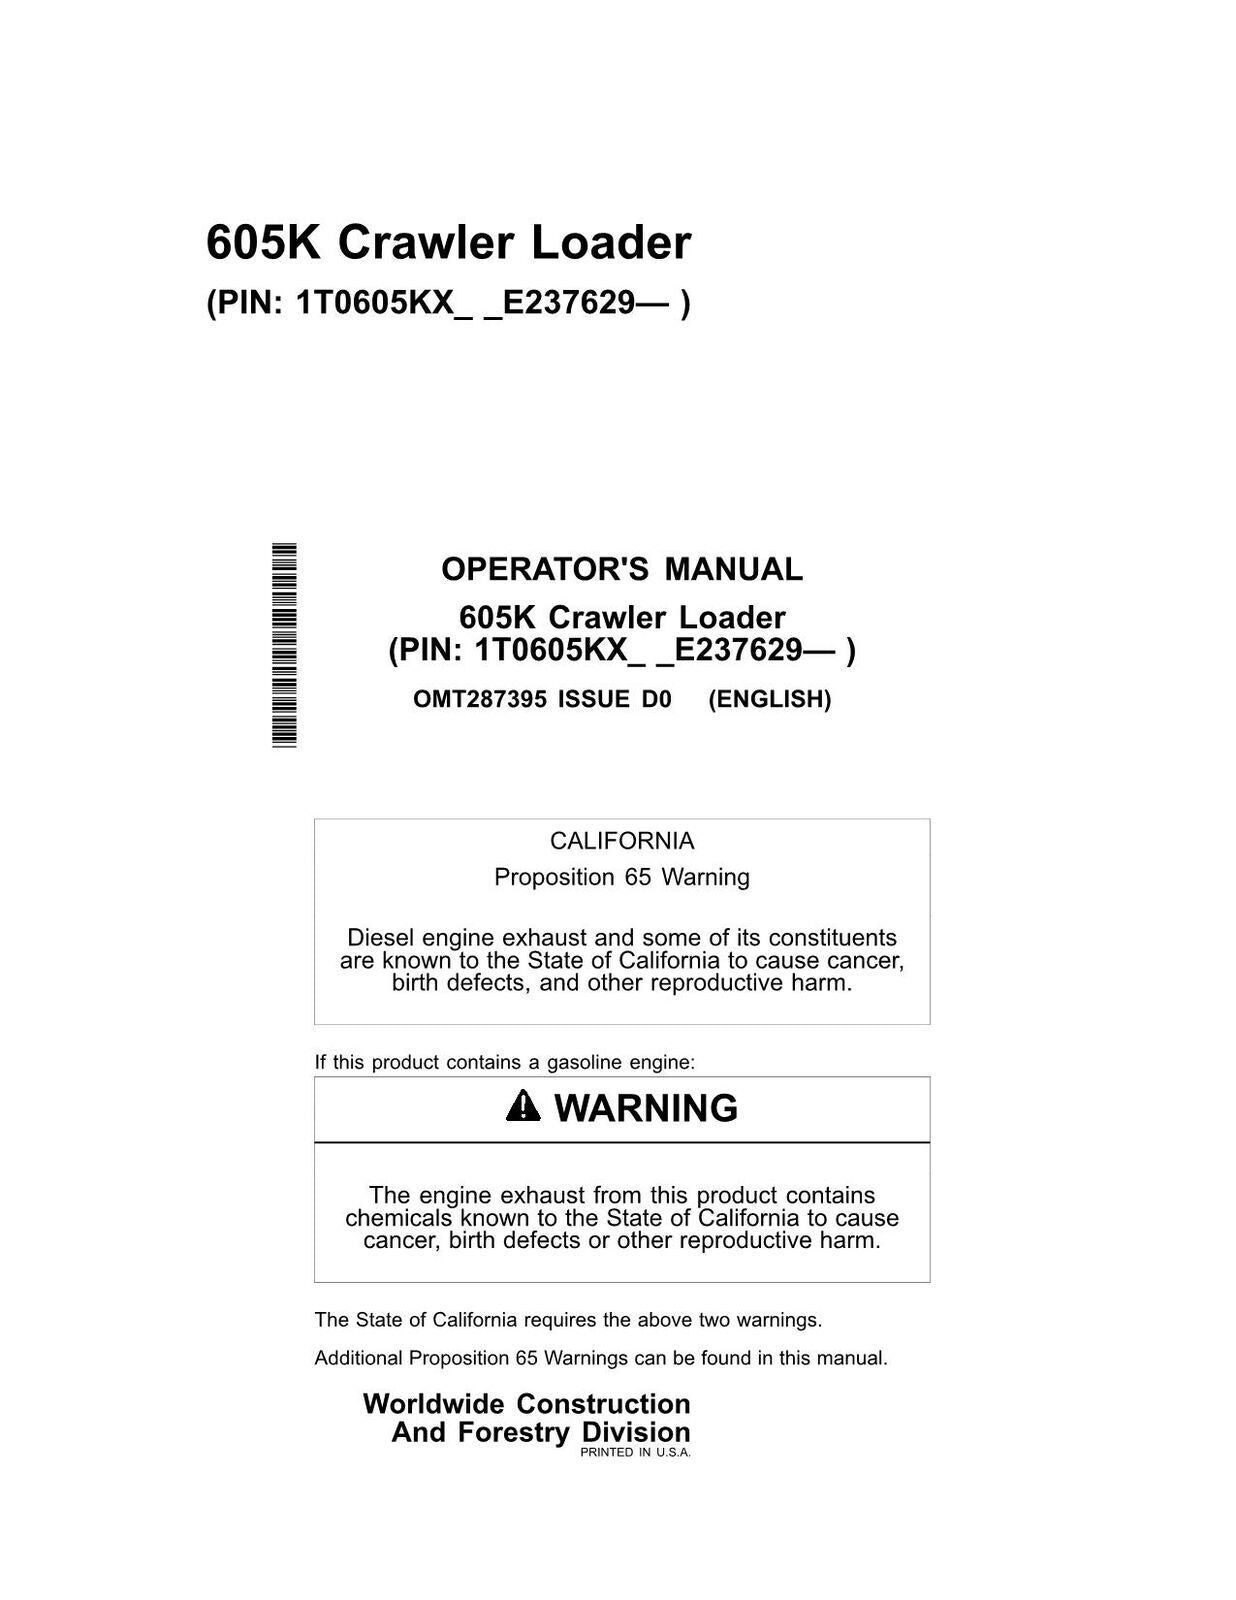 John Deere 605K Crawler Loader Wallpapers